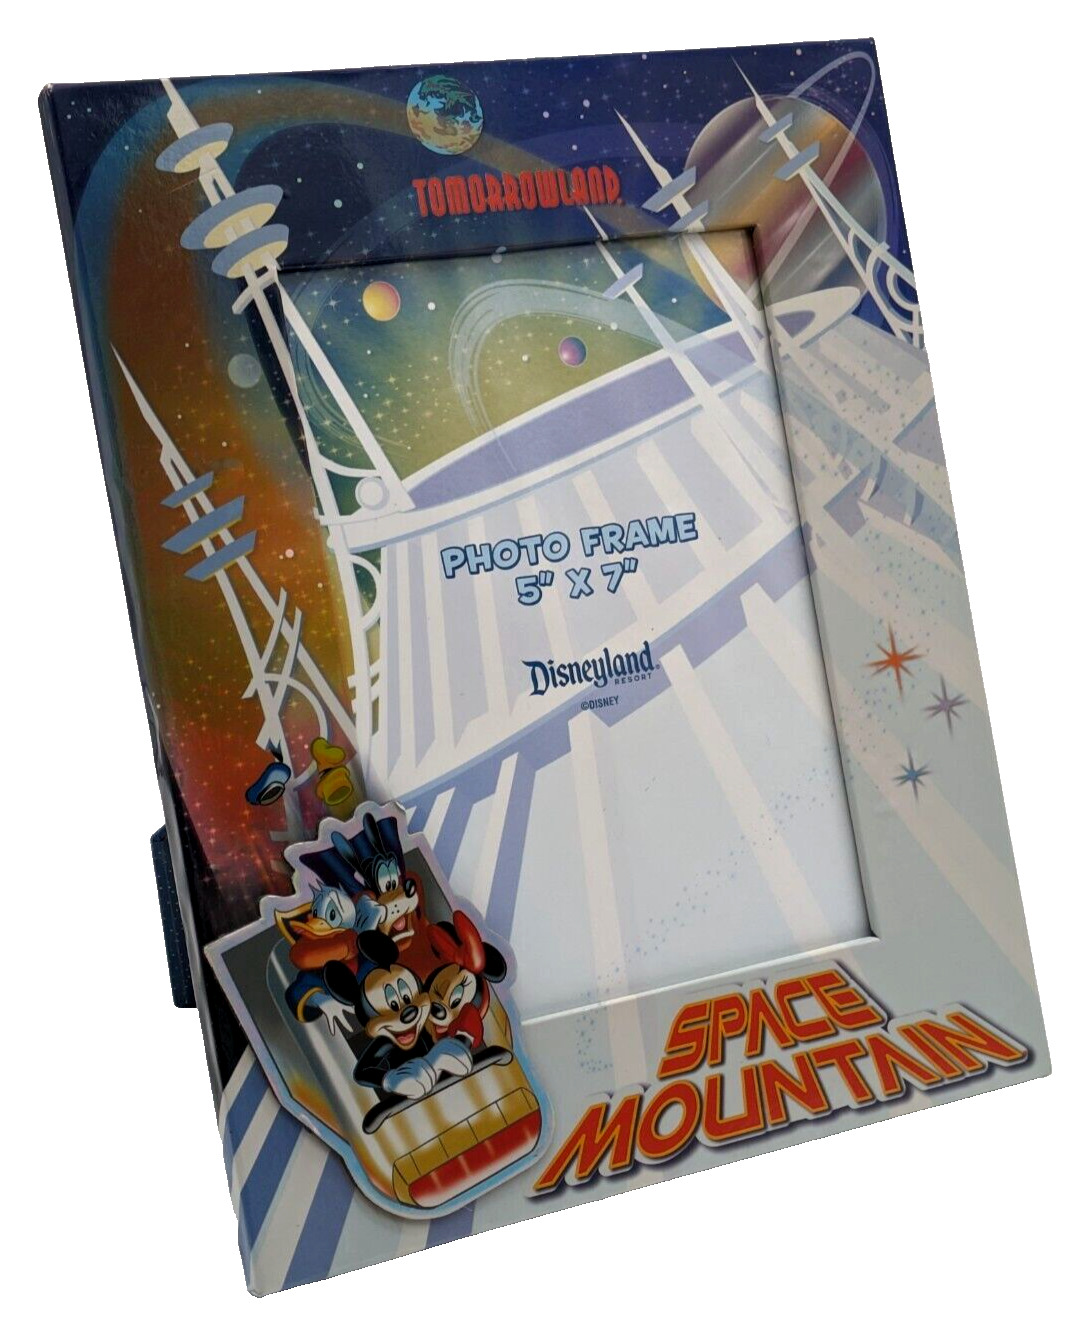 Disney Tomorrowland Space Mountain Metallic Photo Frame Holder